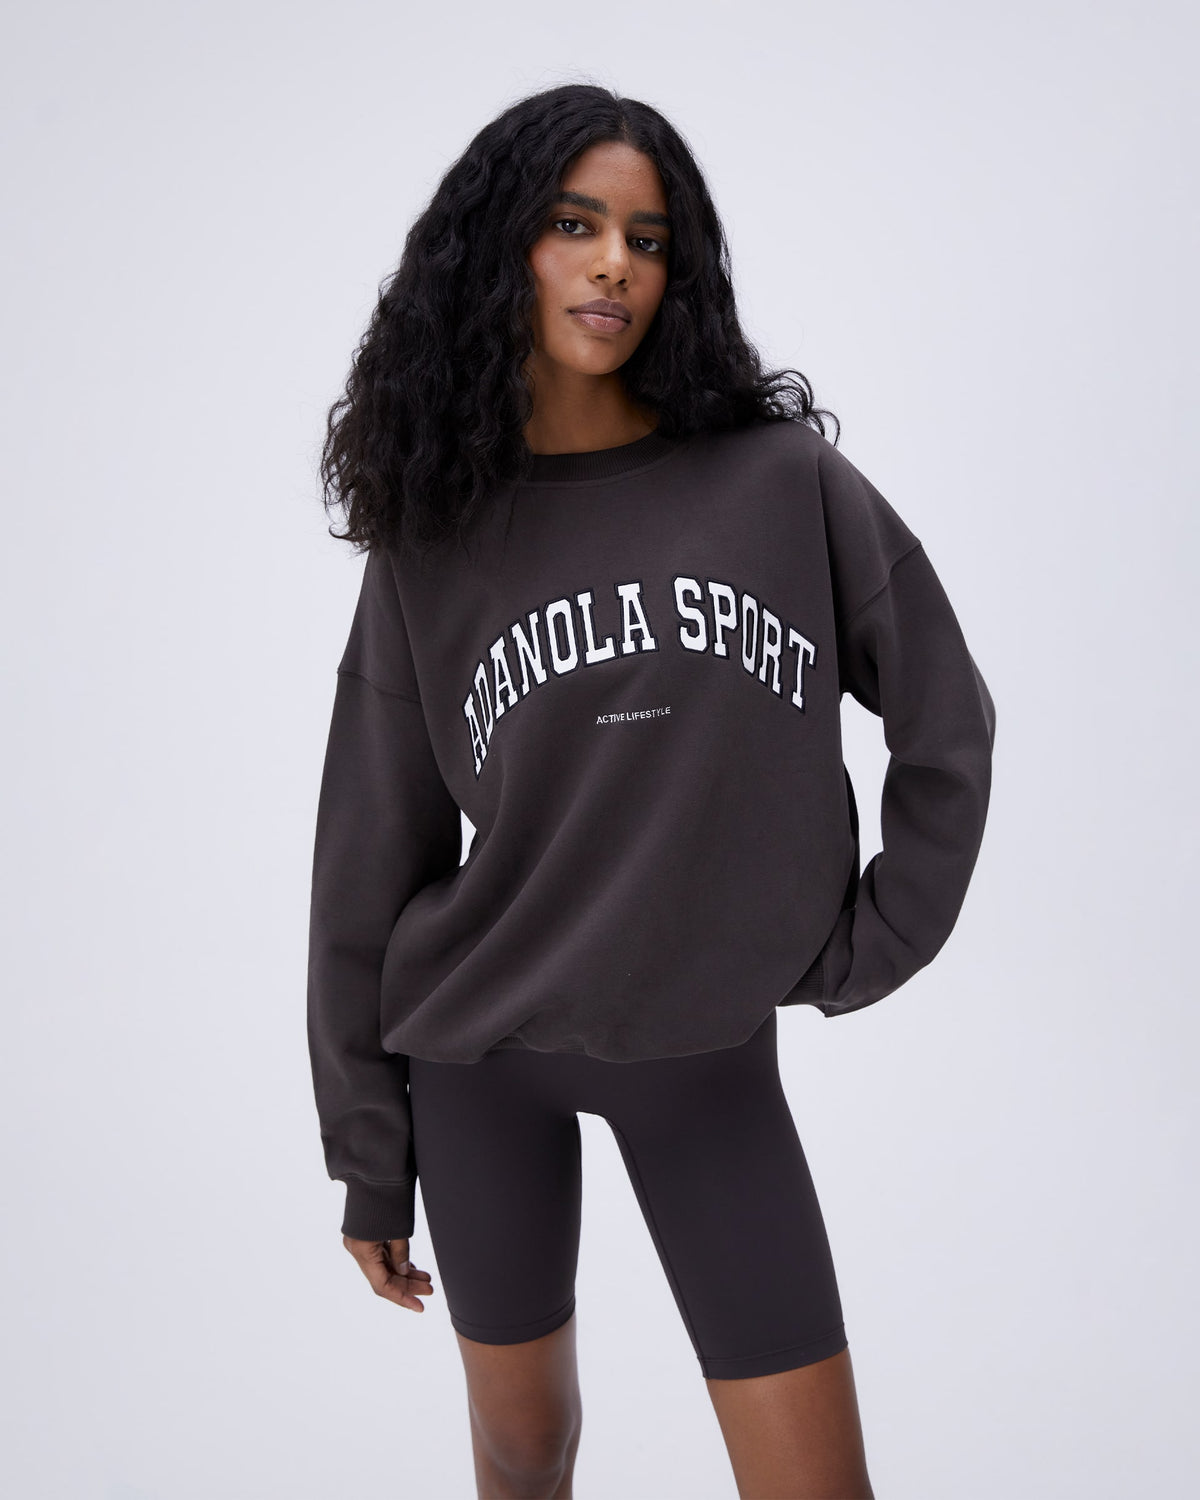 Adanola AS Oversized Sweatshirt